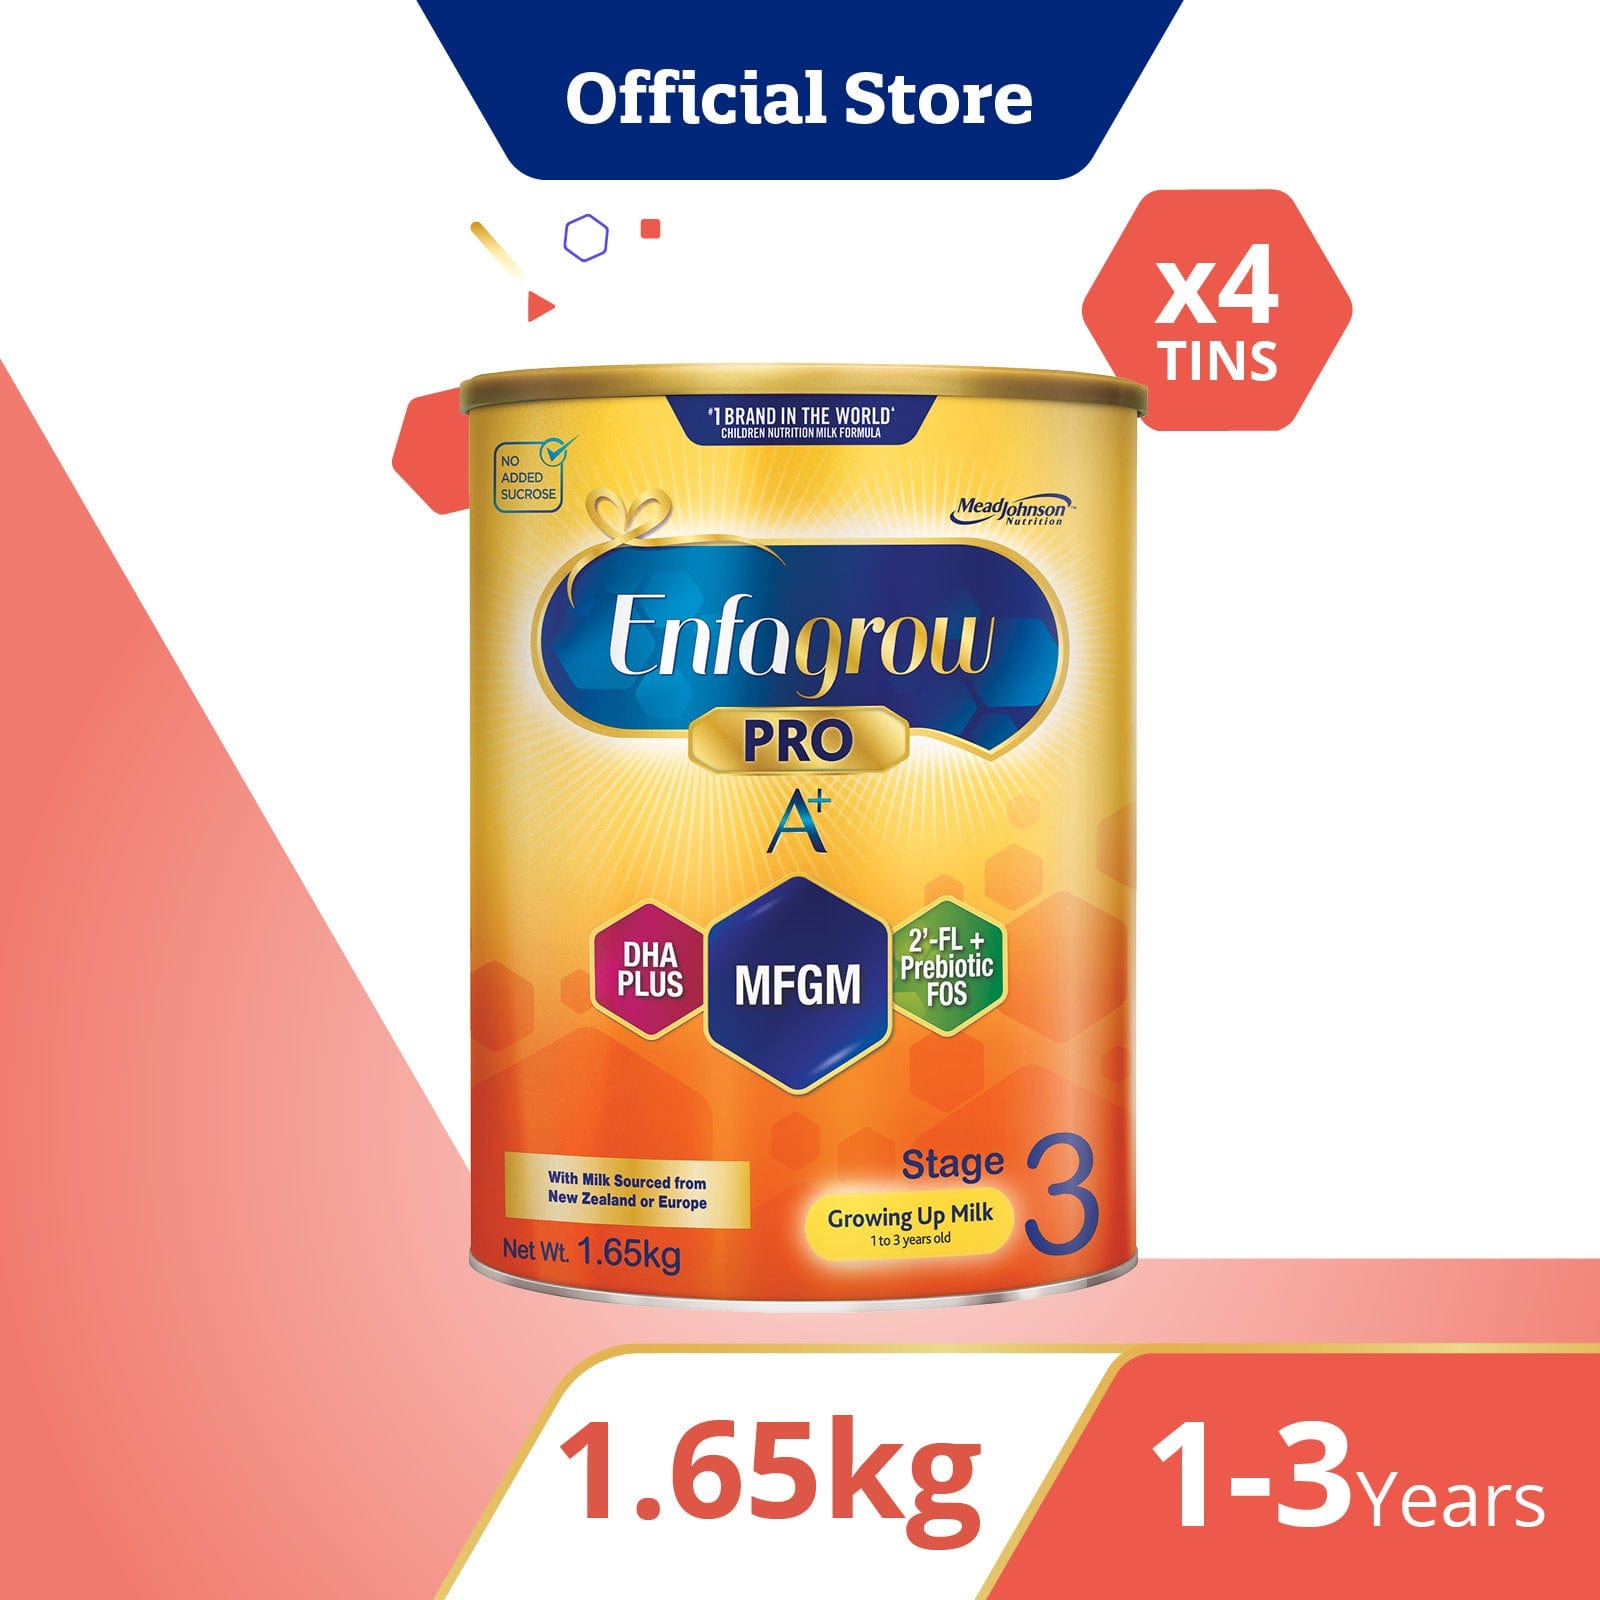 Bundle of 4: Enfagrow Pro A+ Stage 3 Powder 1.65kg Original Flavour x 4